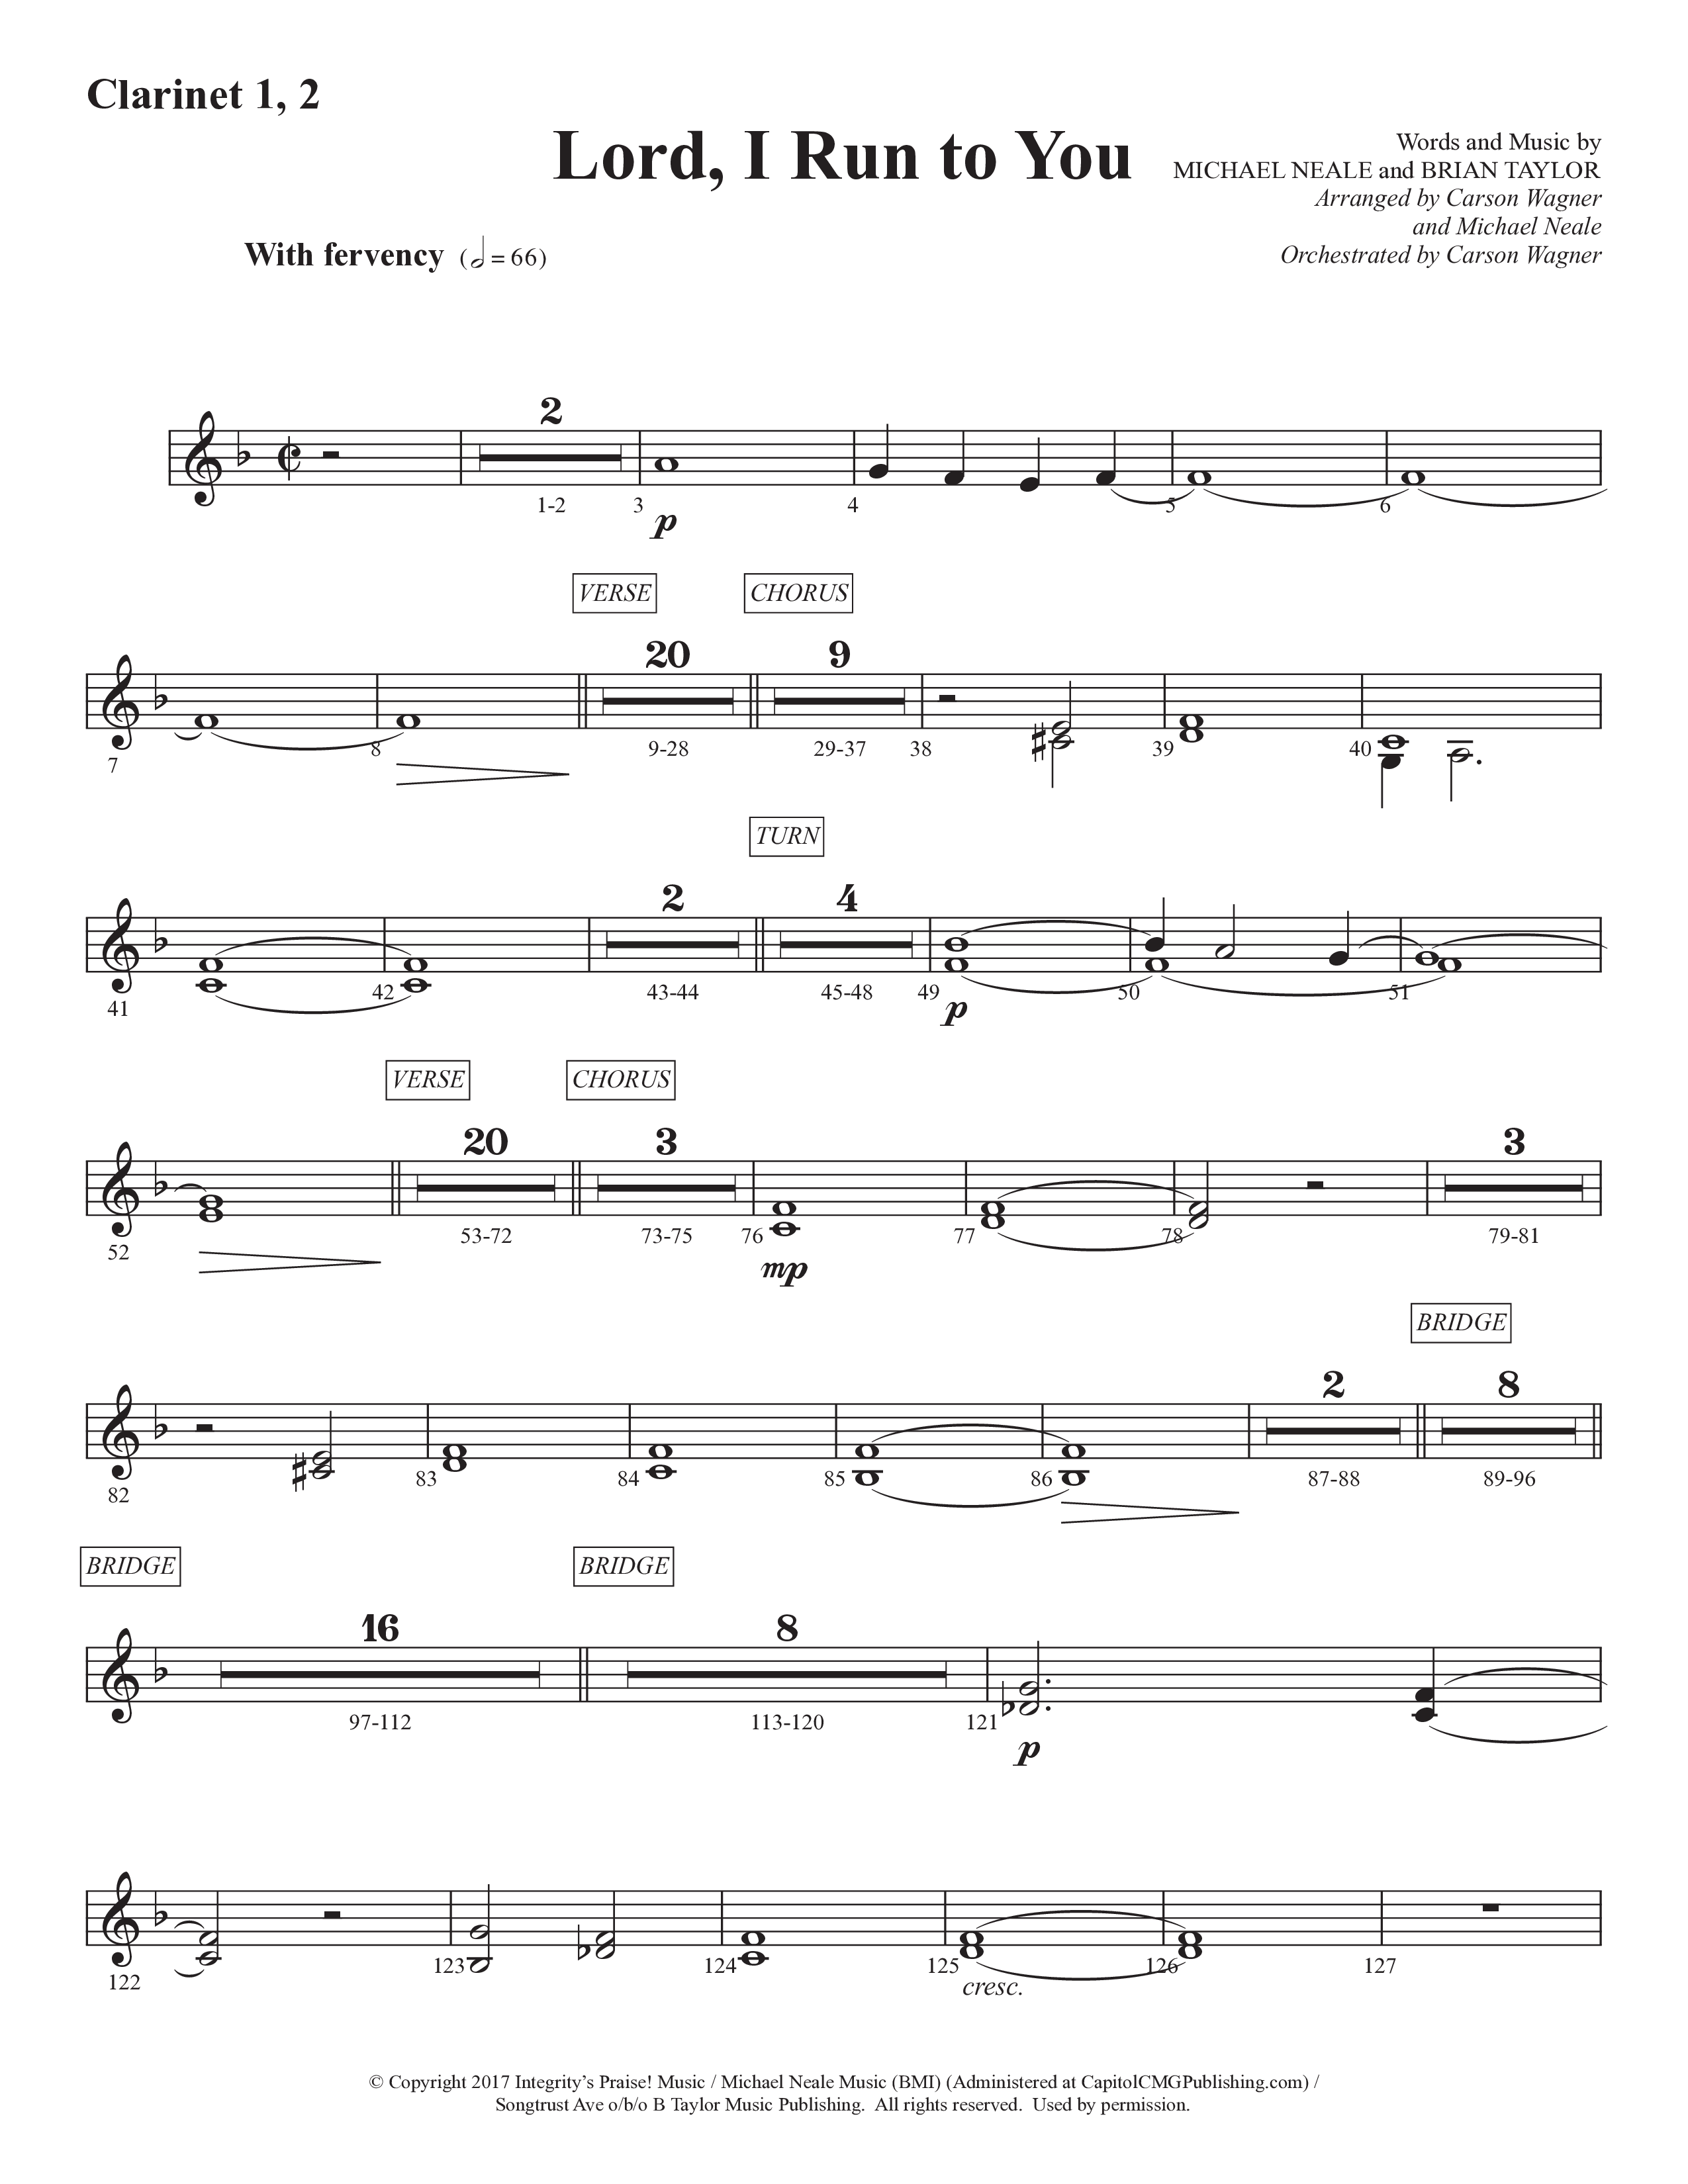 Lord I Run To You (Choral Anthem SATB) Clarinet 1/2 (Prestonwood Worship / Prestonwood Choir / Arr. Michael Neale / Arr. Carson Wagner)